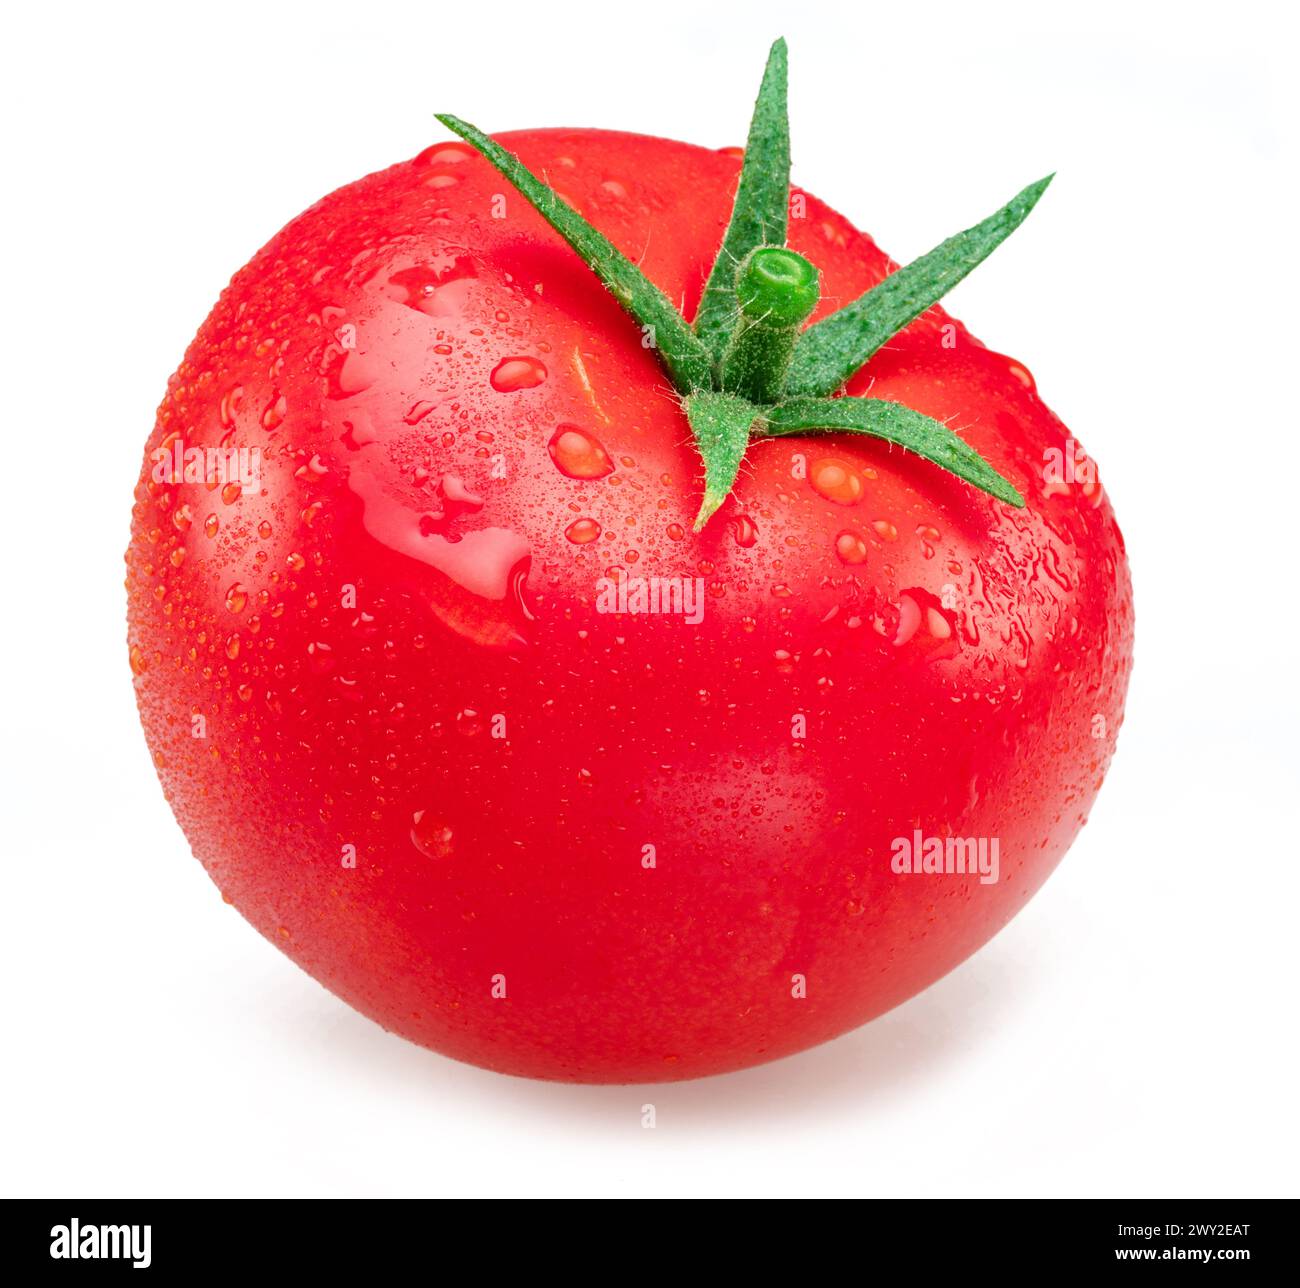 Pomodoro rosso appena lavato ricoperto da gocce d'acqua su sfondo bianco. Foto Stock